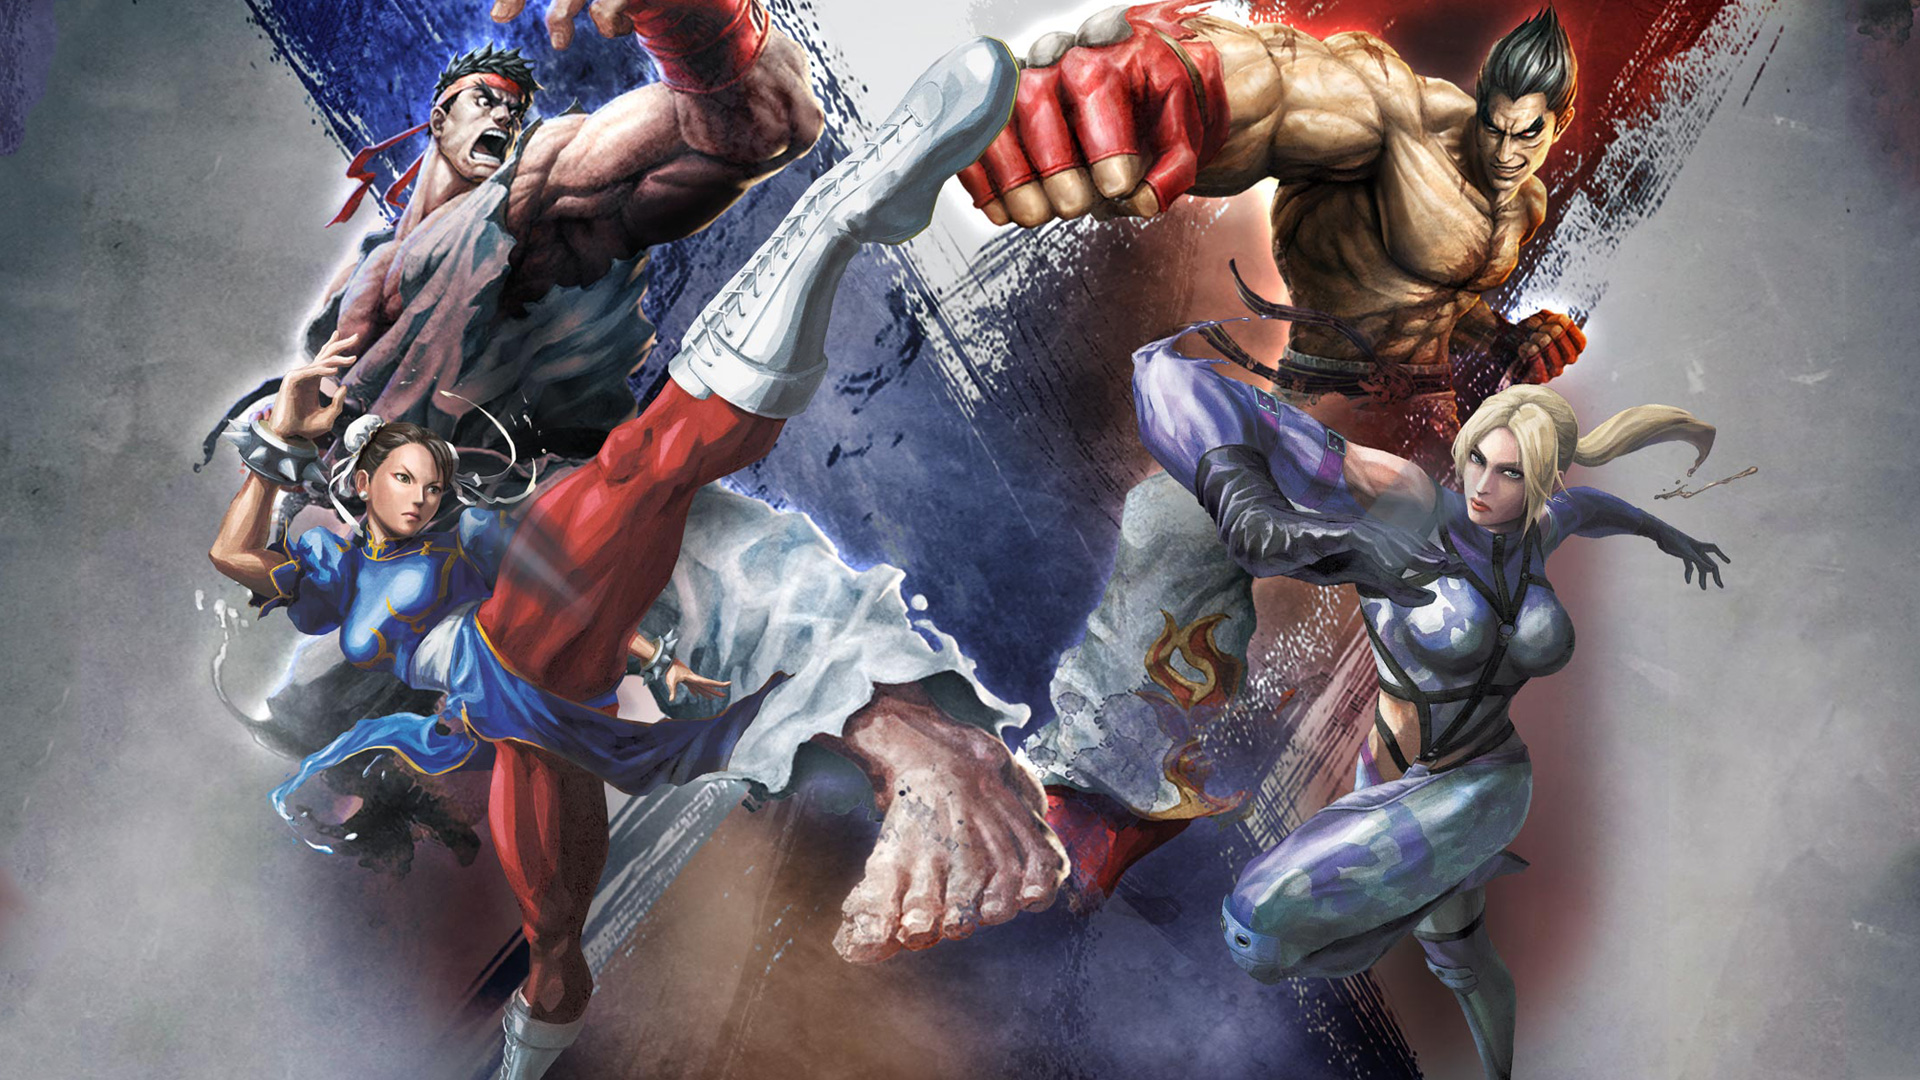 Street Fighter X Tekken Wallpaper HD Video Games